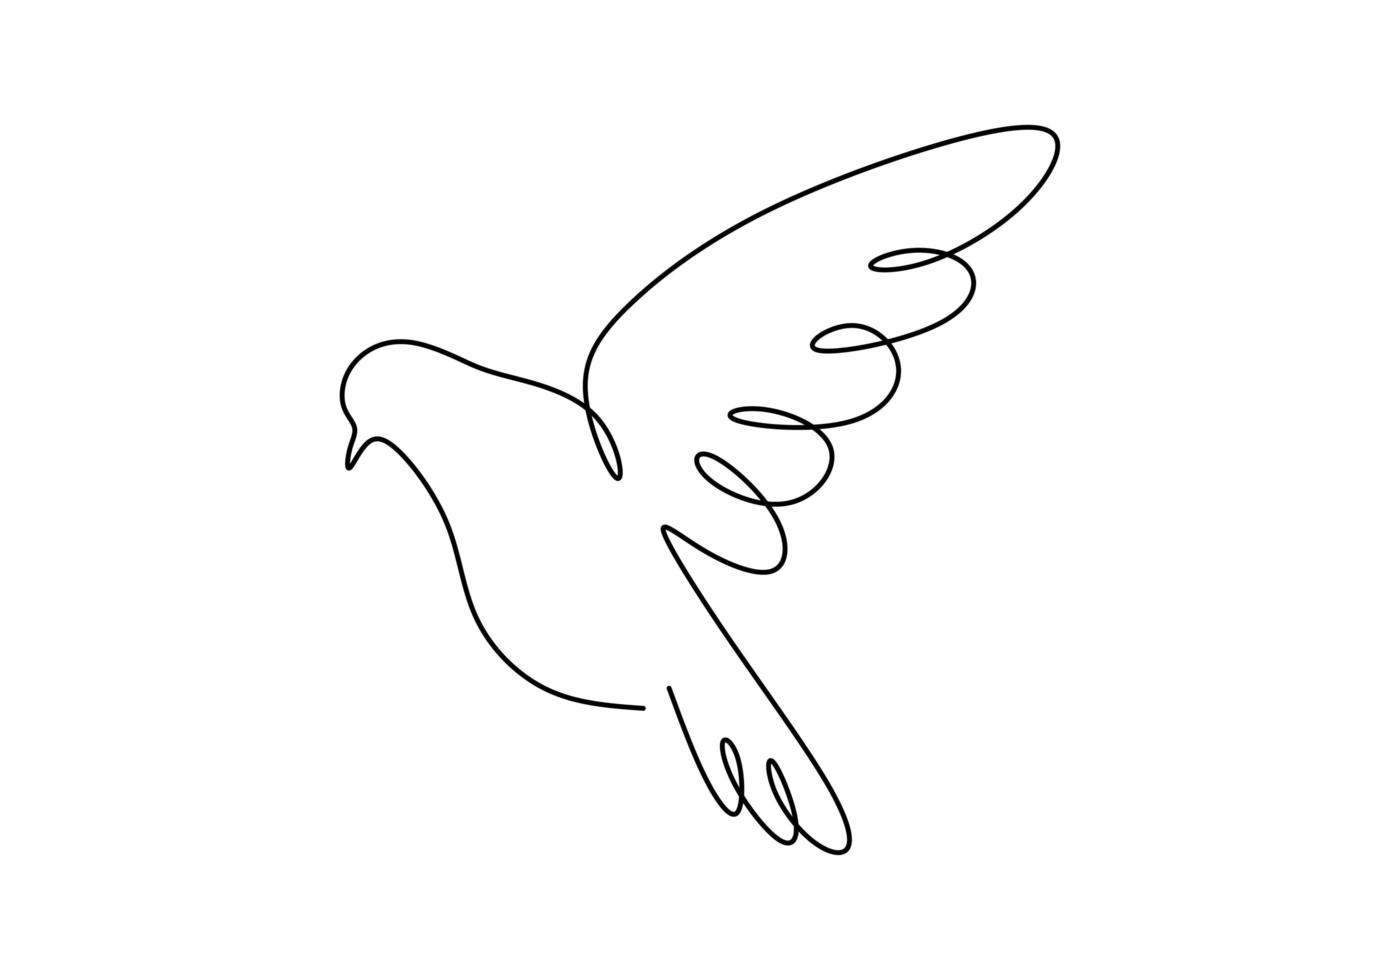 Colombe un dessin au trait, vol d'oiseau continu dessiné à la main. bon pour l'affiche, le logo, l'emblème et la bannière. vecteur